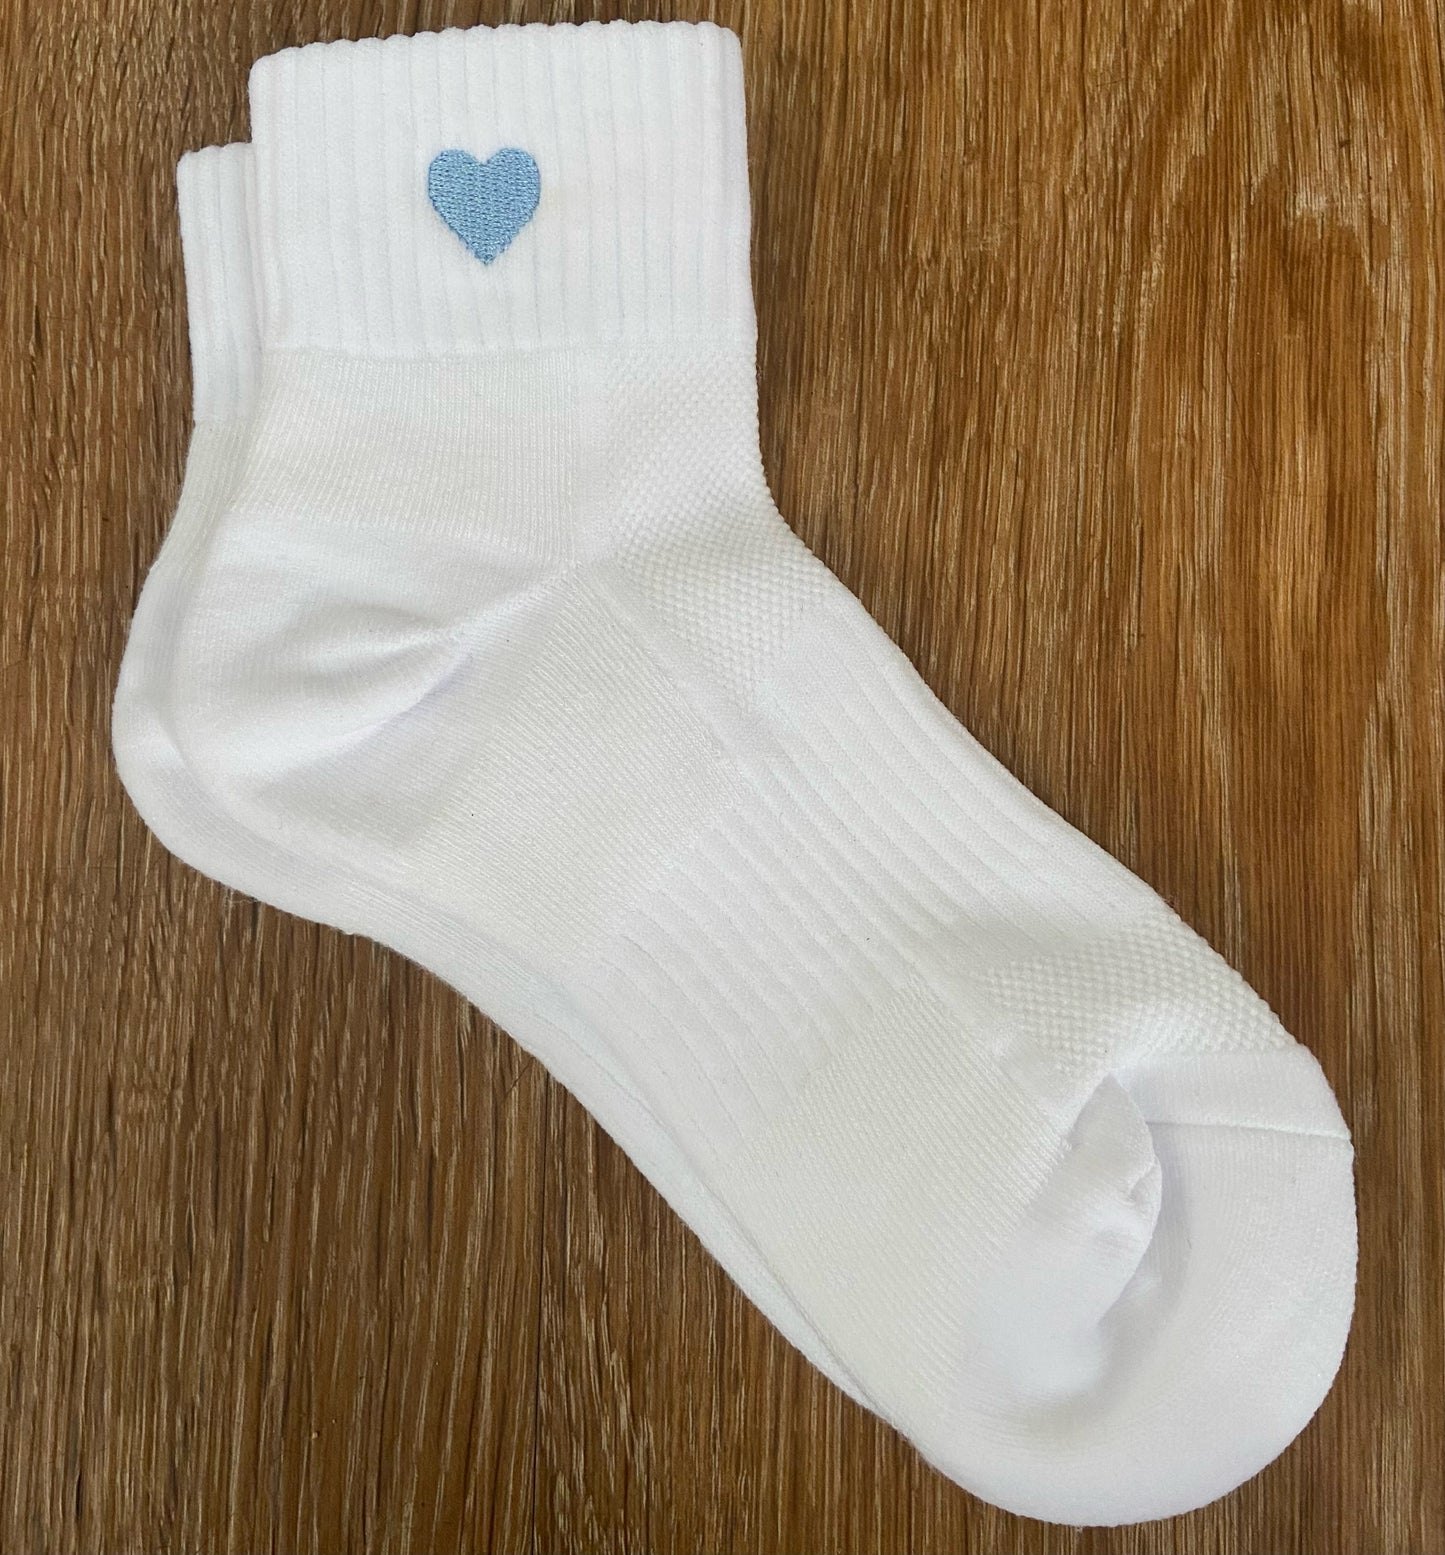 Embroidered Heart Quarter Socks